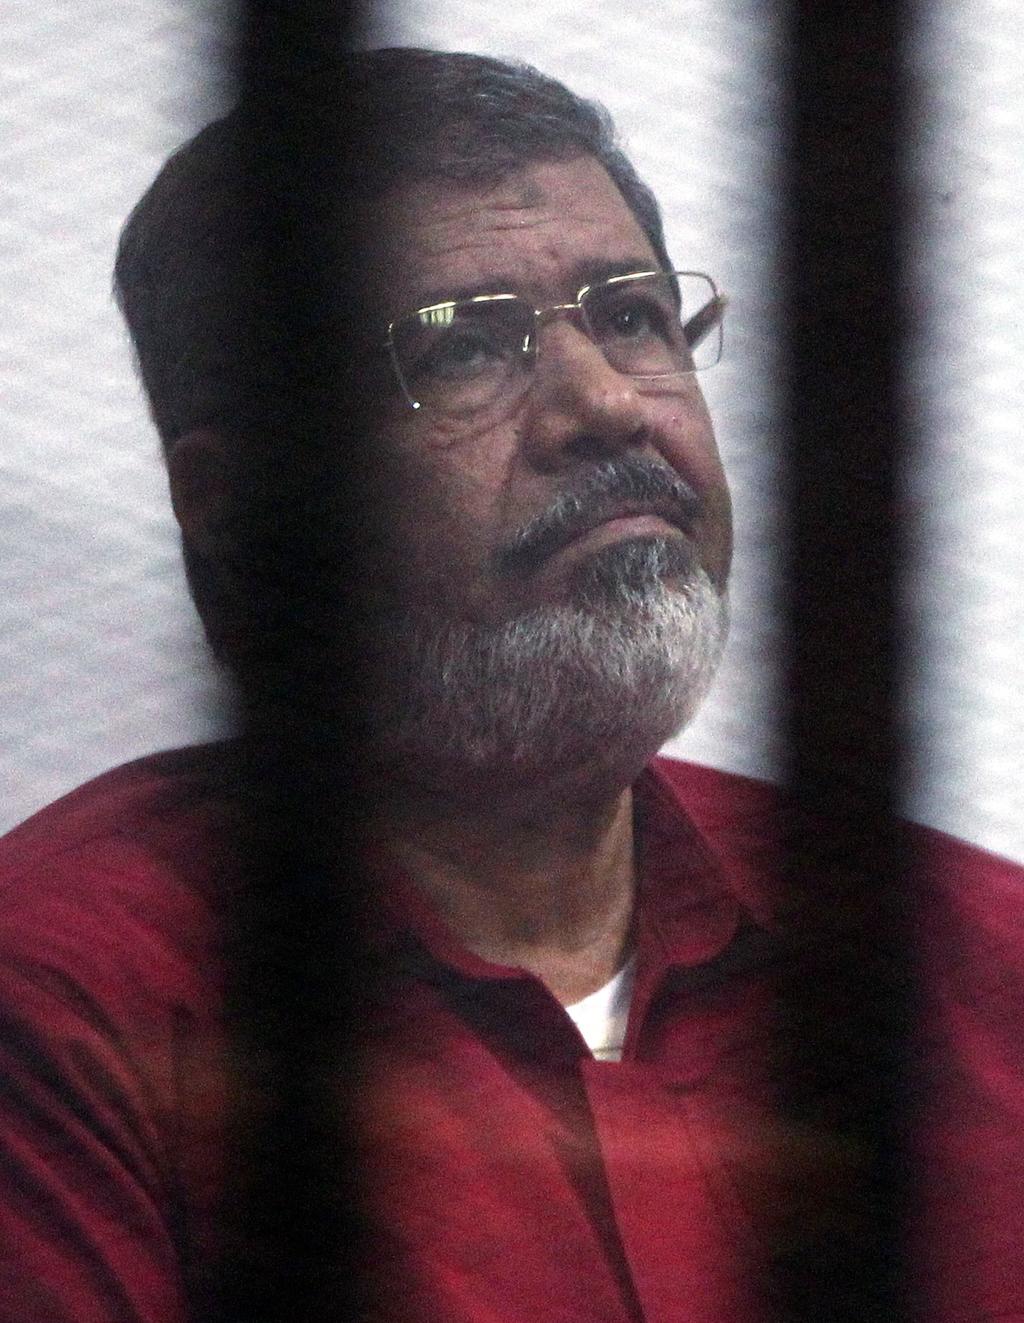 El exmandatario, de 67 años, murió en un tribunal de El Cairo, dentro de la jaula de los acusados. (EFE)